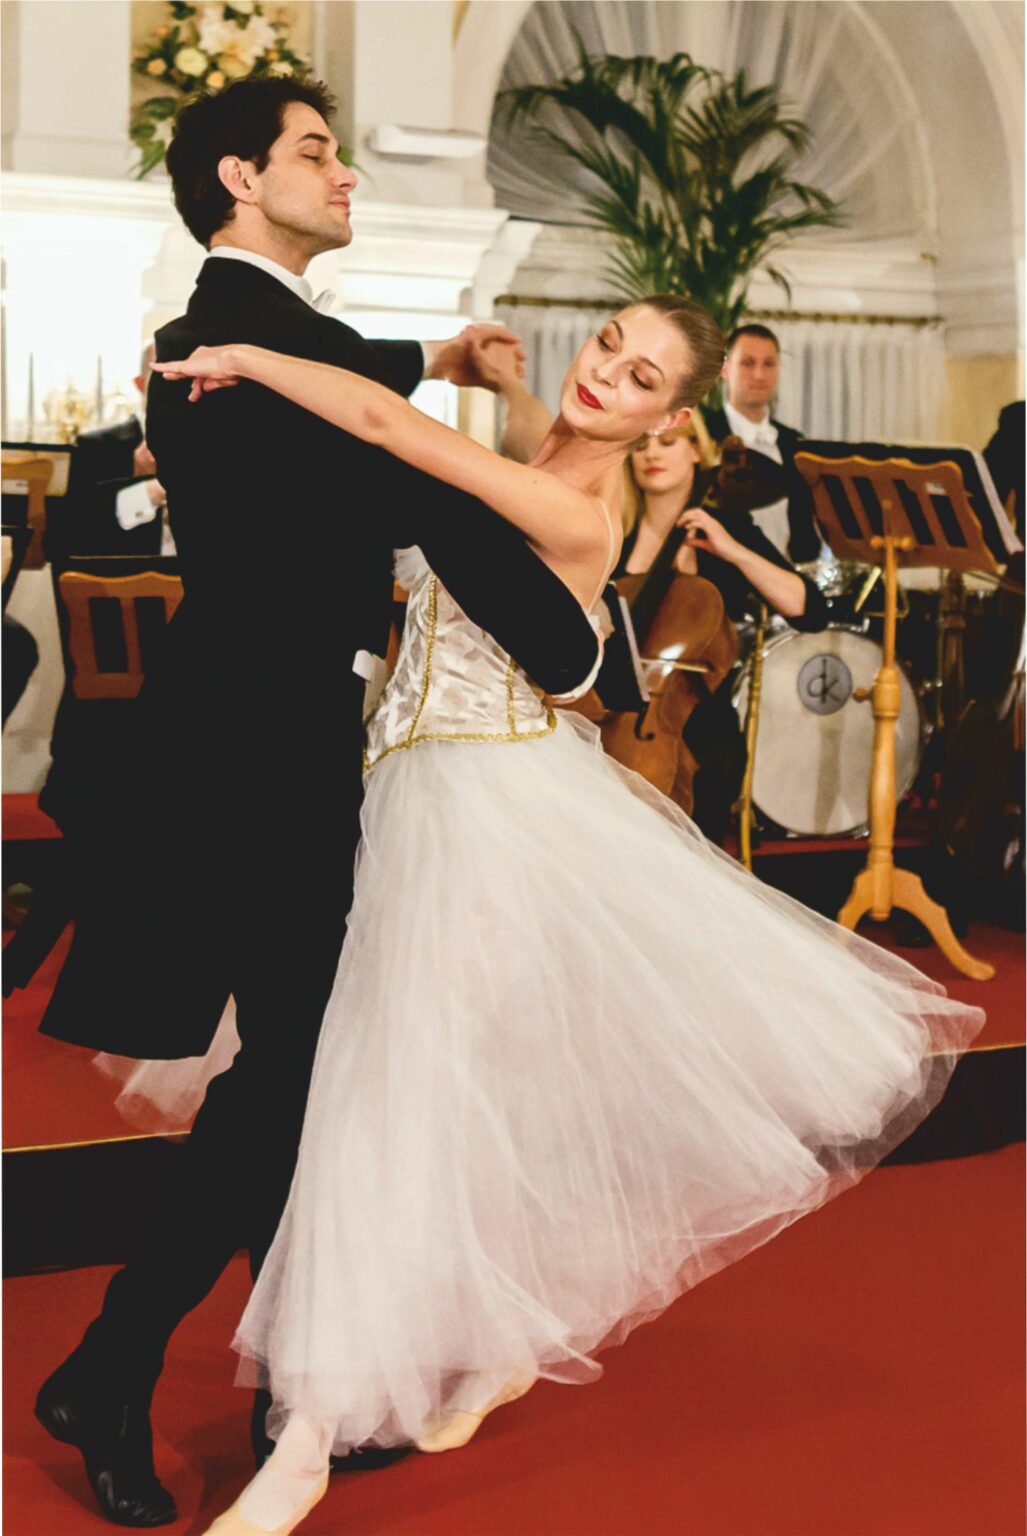 Una pareja bailando un baile de salón delante de una orquesta en directo